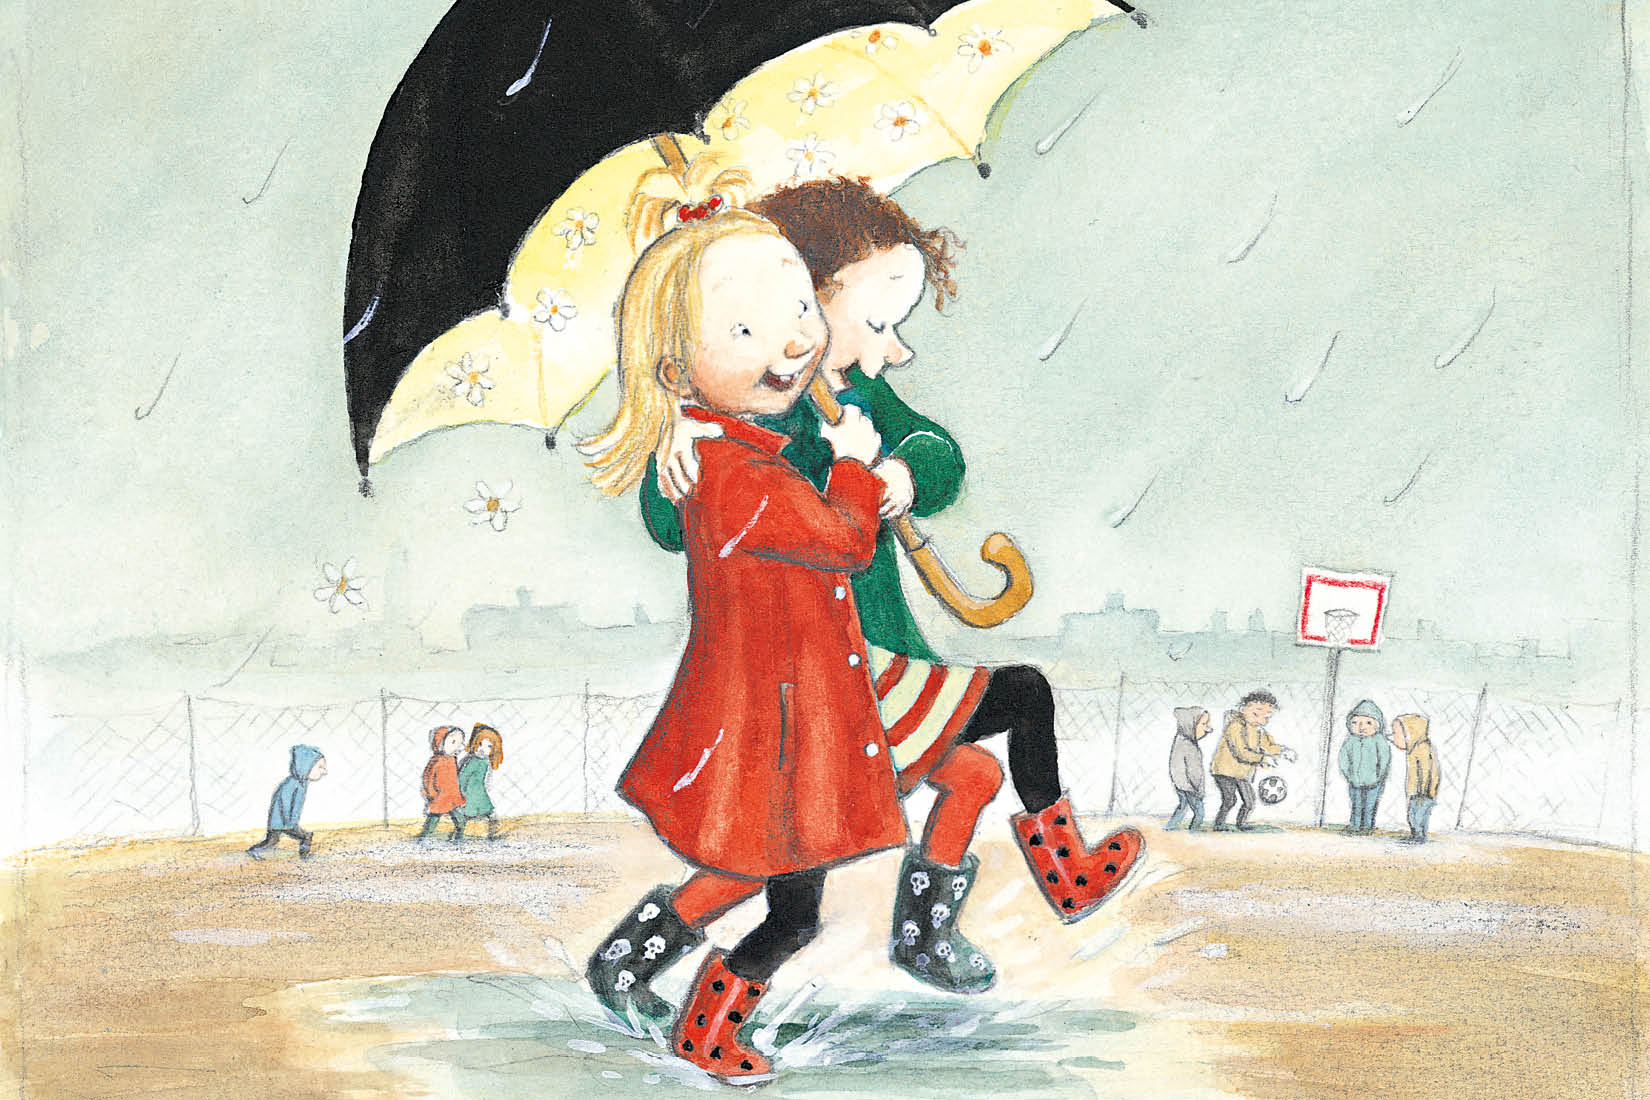 Dessin de deux enfants sautant dans une flaque en riant sous un parapluie.